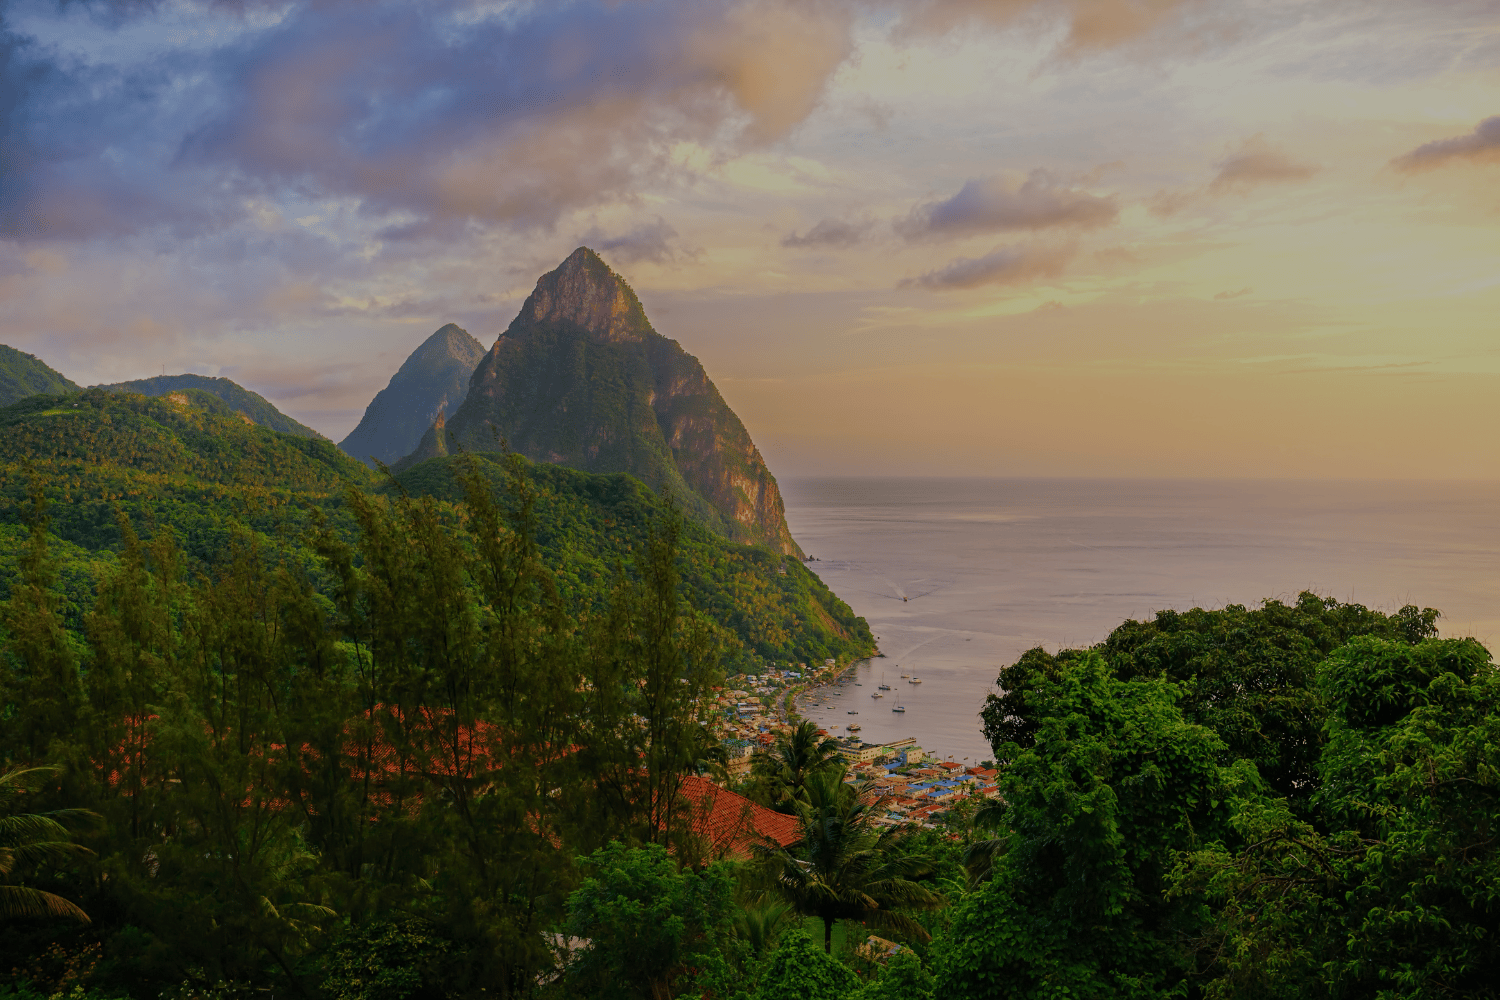 The Piton Mountains in Saint Lucia